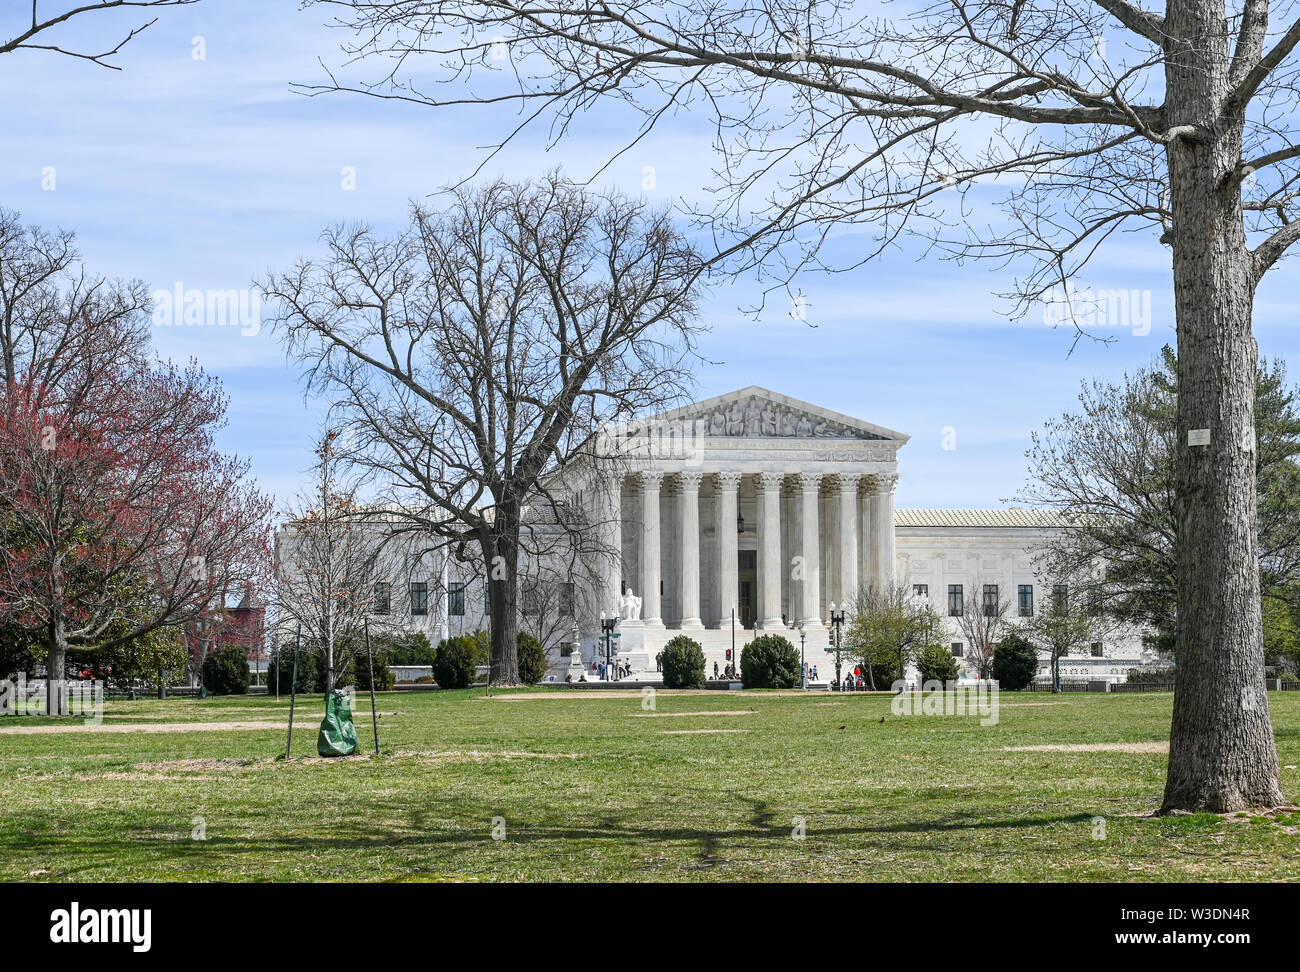 Cour suprême des États-Unis sur une journée de printemps ensoleillée à Washington DC. Actuellement desservie par neuf juges nommés à vie. Banque D'Images